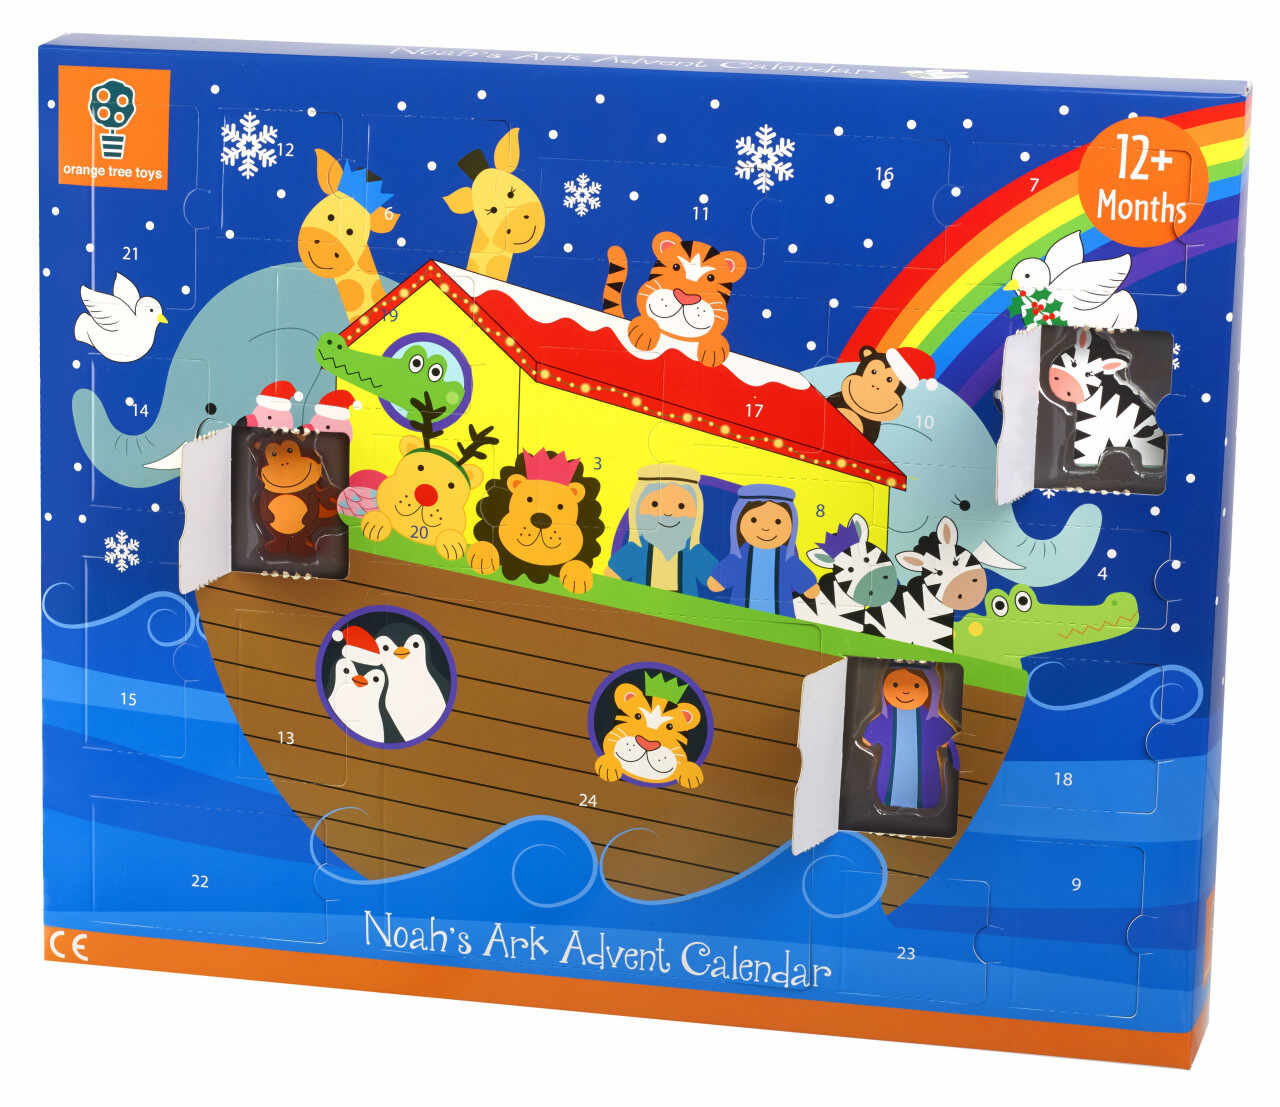 Arca lui Noe, Calendar de Advent Orange Tree Toys, 12 luni+